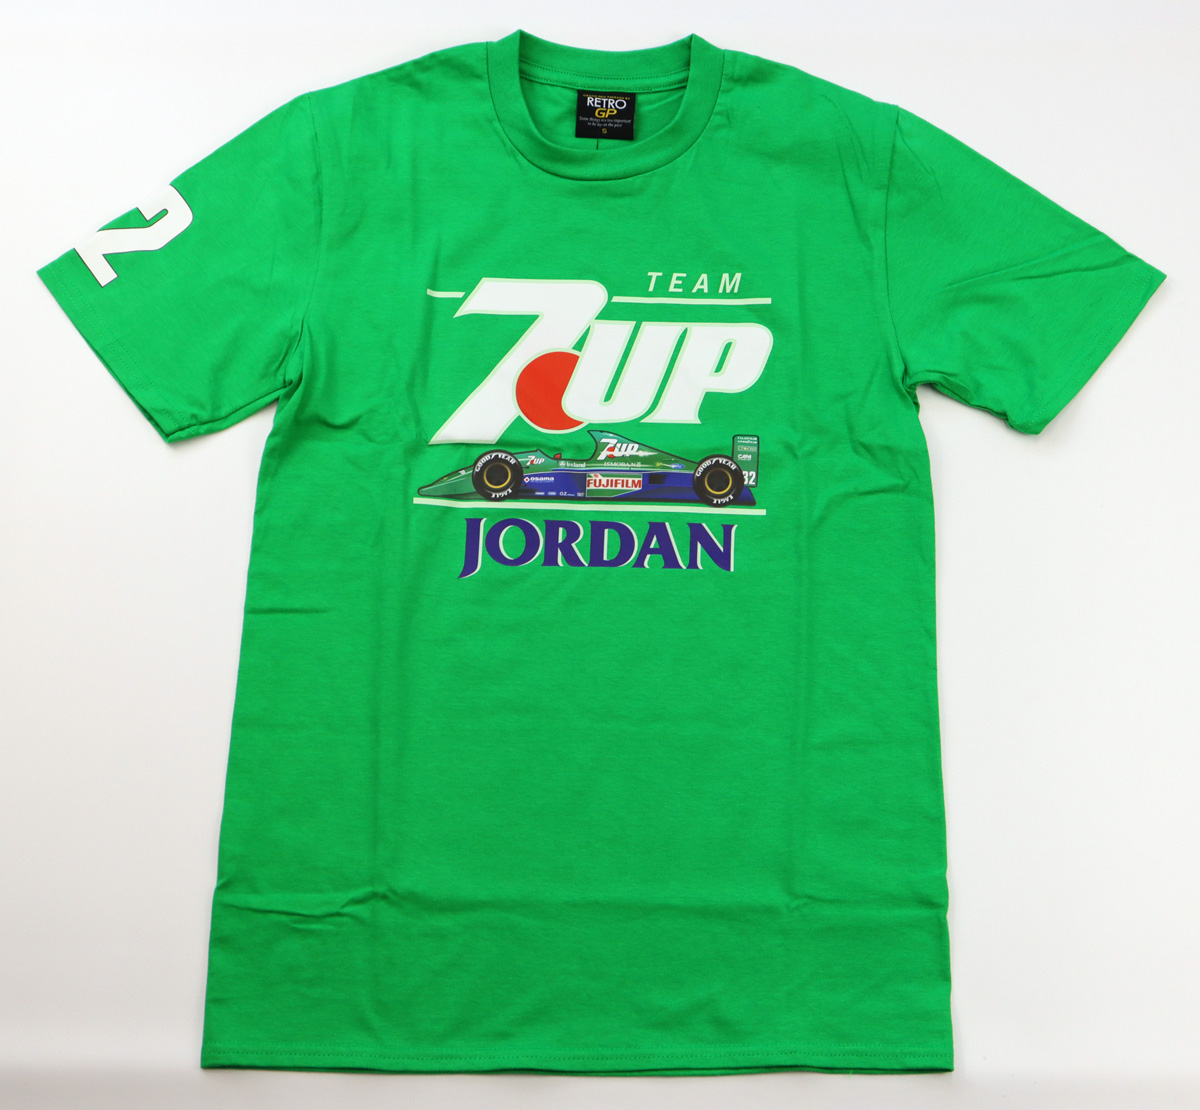 ジョーダン グランプリ 7up チーム #32 ベルトラン ガショー Tシャツ / グリーン画像